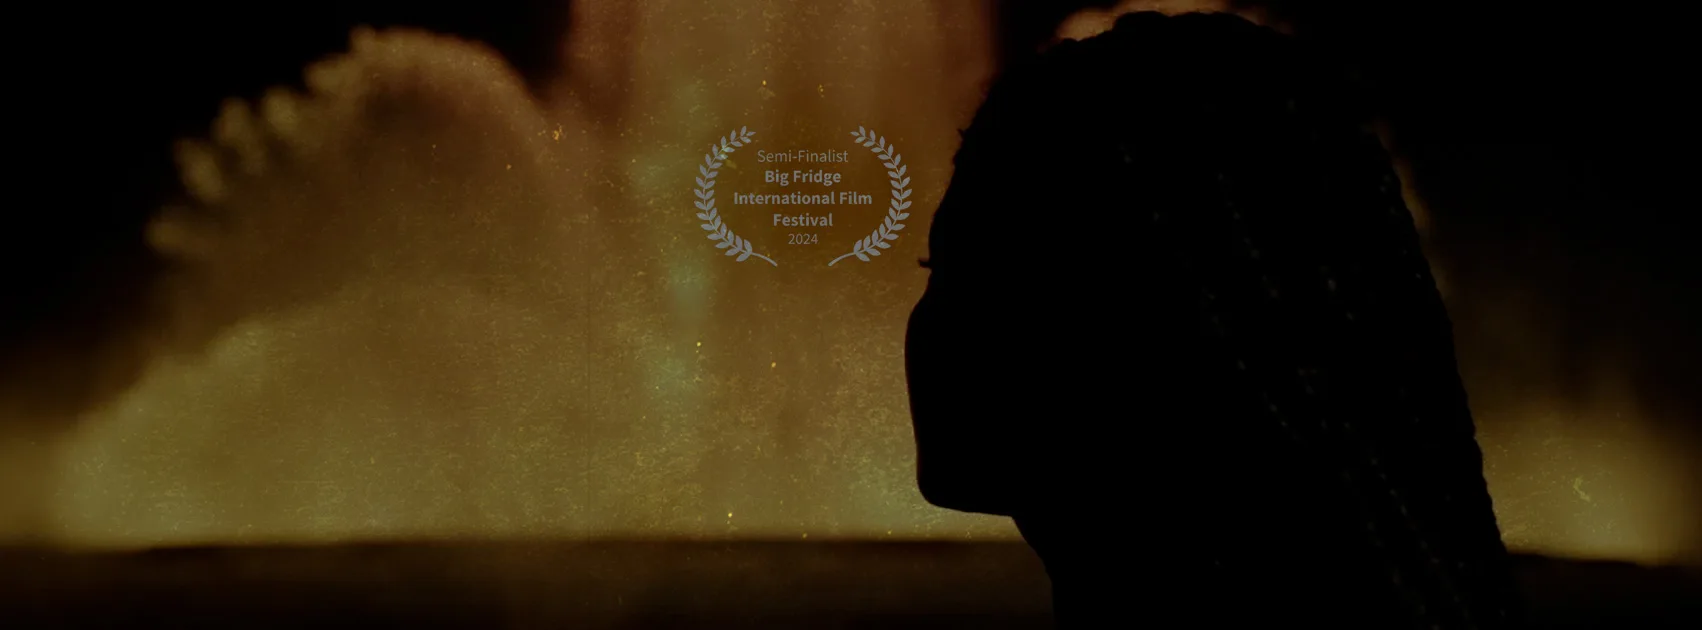 Il corto documentario "As leaves in the wind" di Sofia Luz è semifinalista al Big Fridge International Film Festival